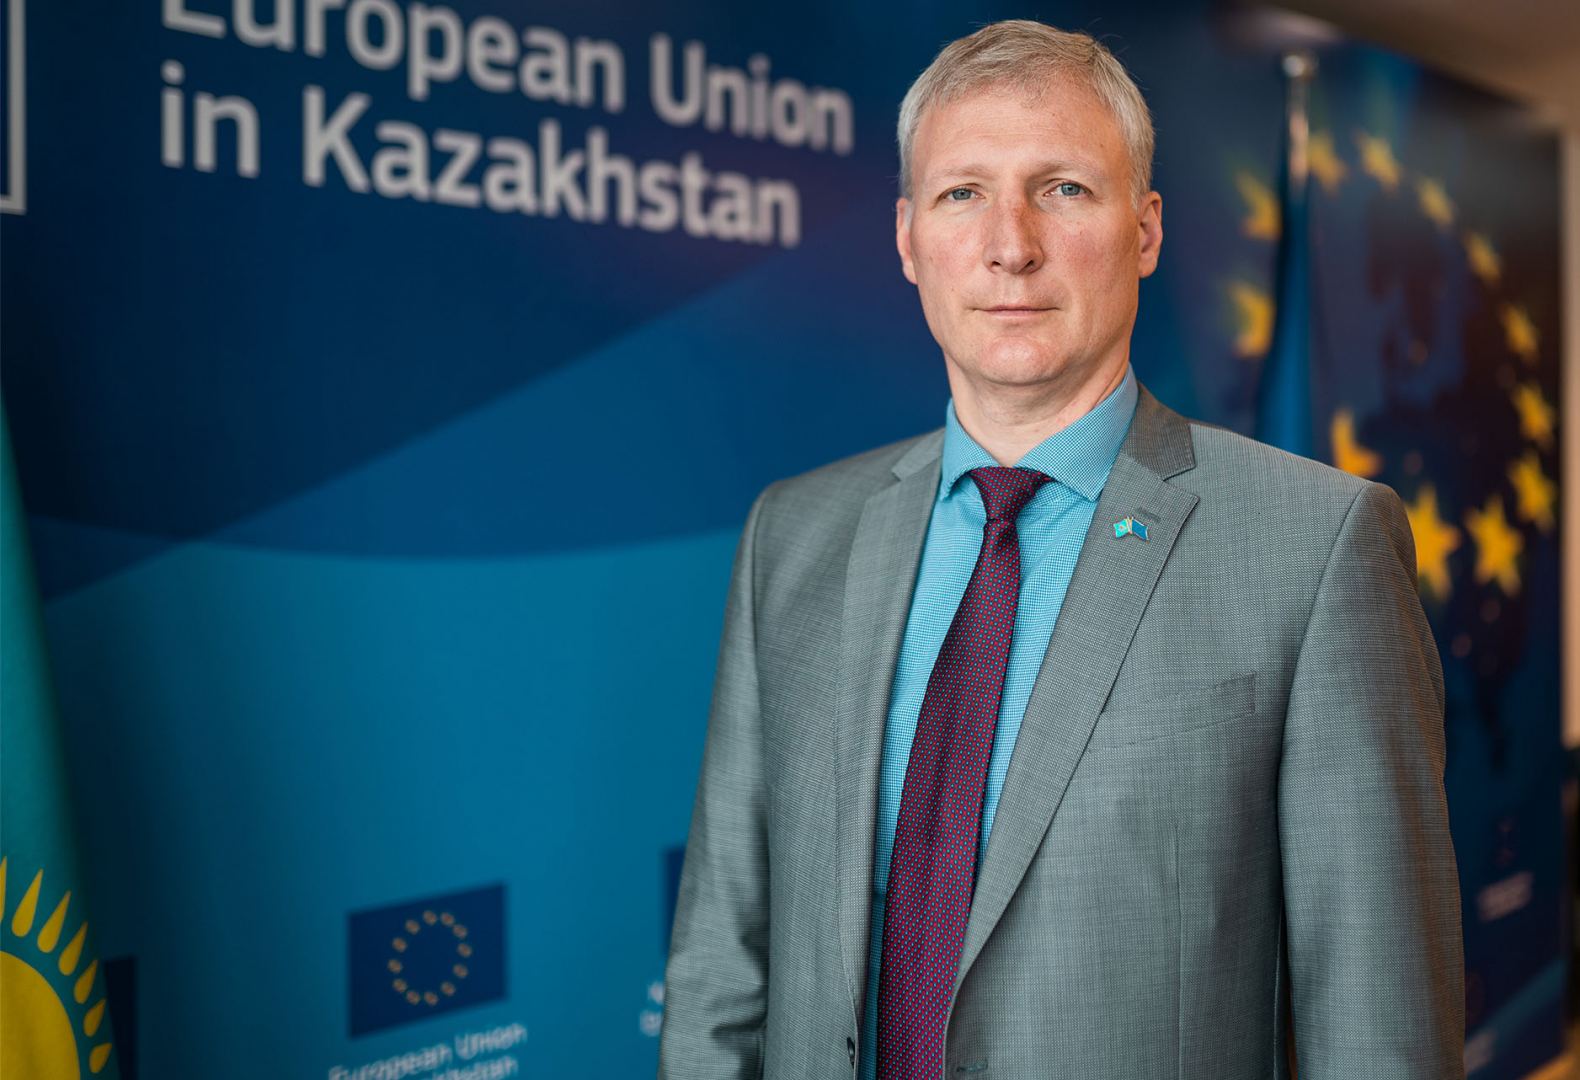 Казахстан будет востребован как один из альтернативных поставщиков энергоресурсов в ЕС - посол (Интервью)